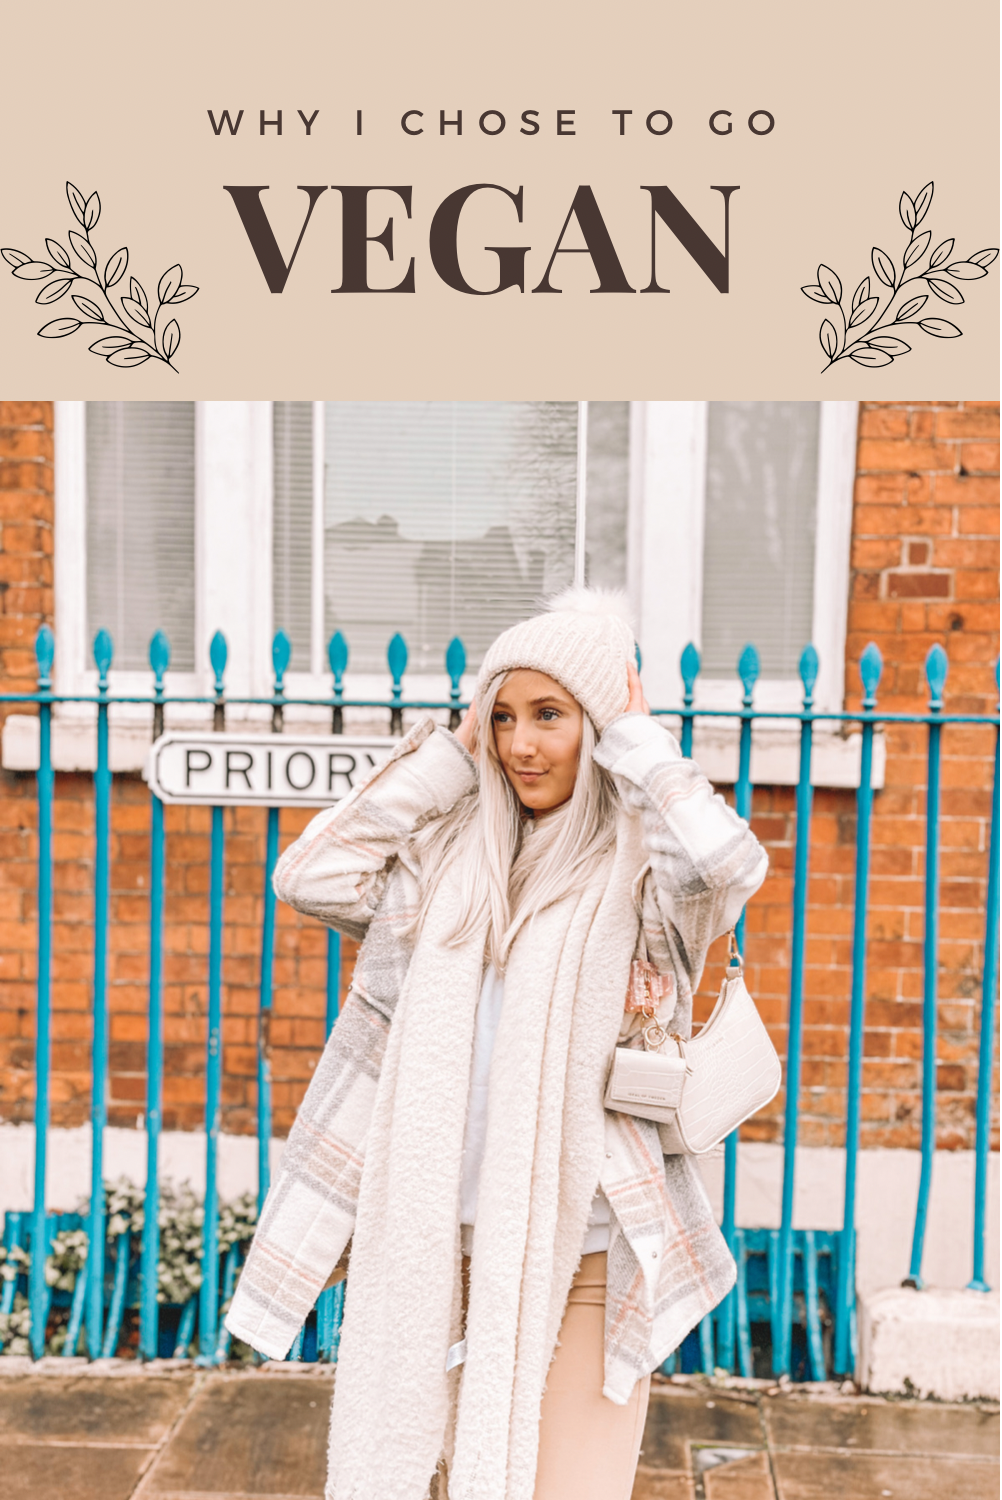 Why I chose to go vegan